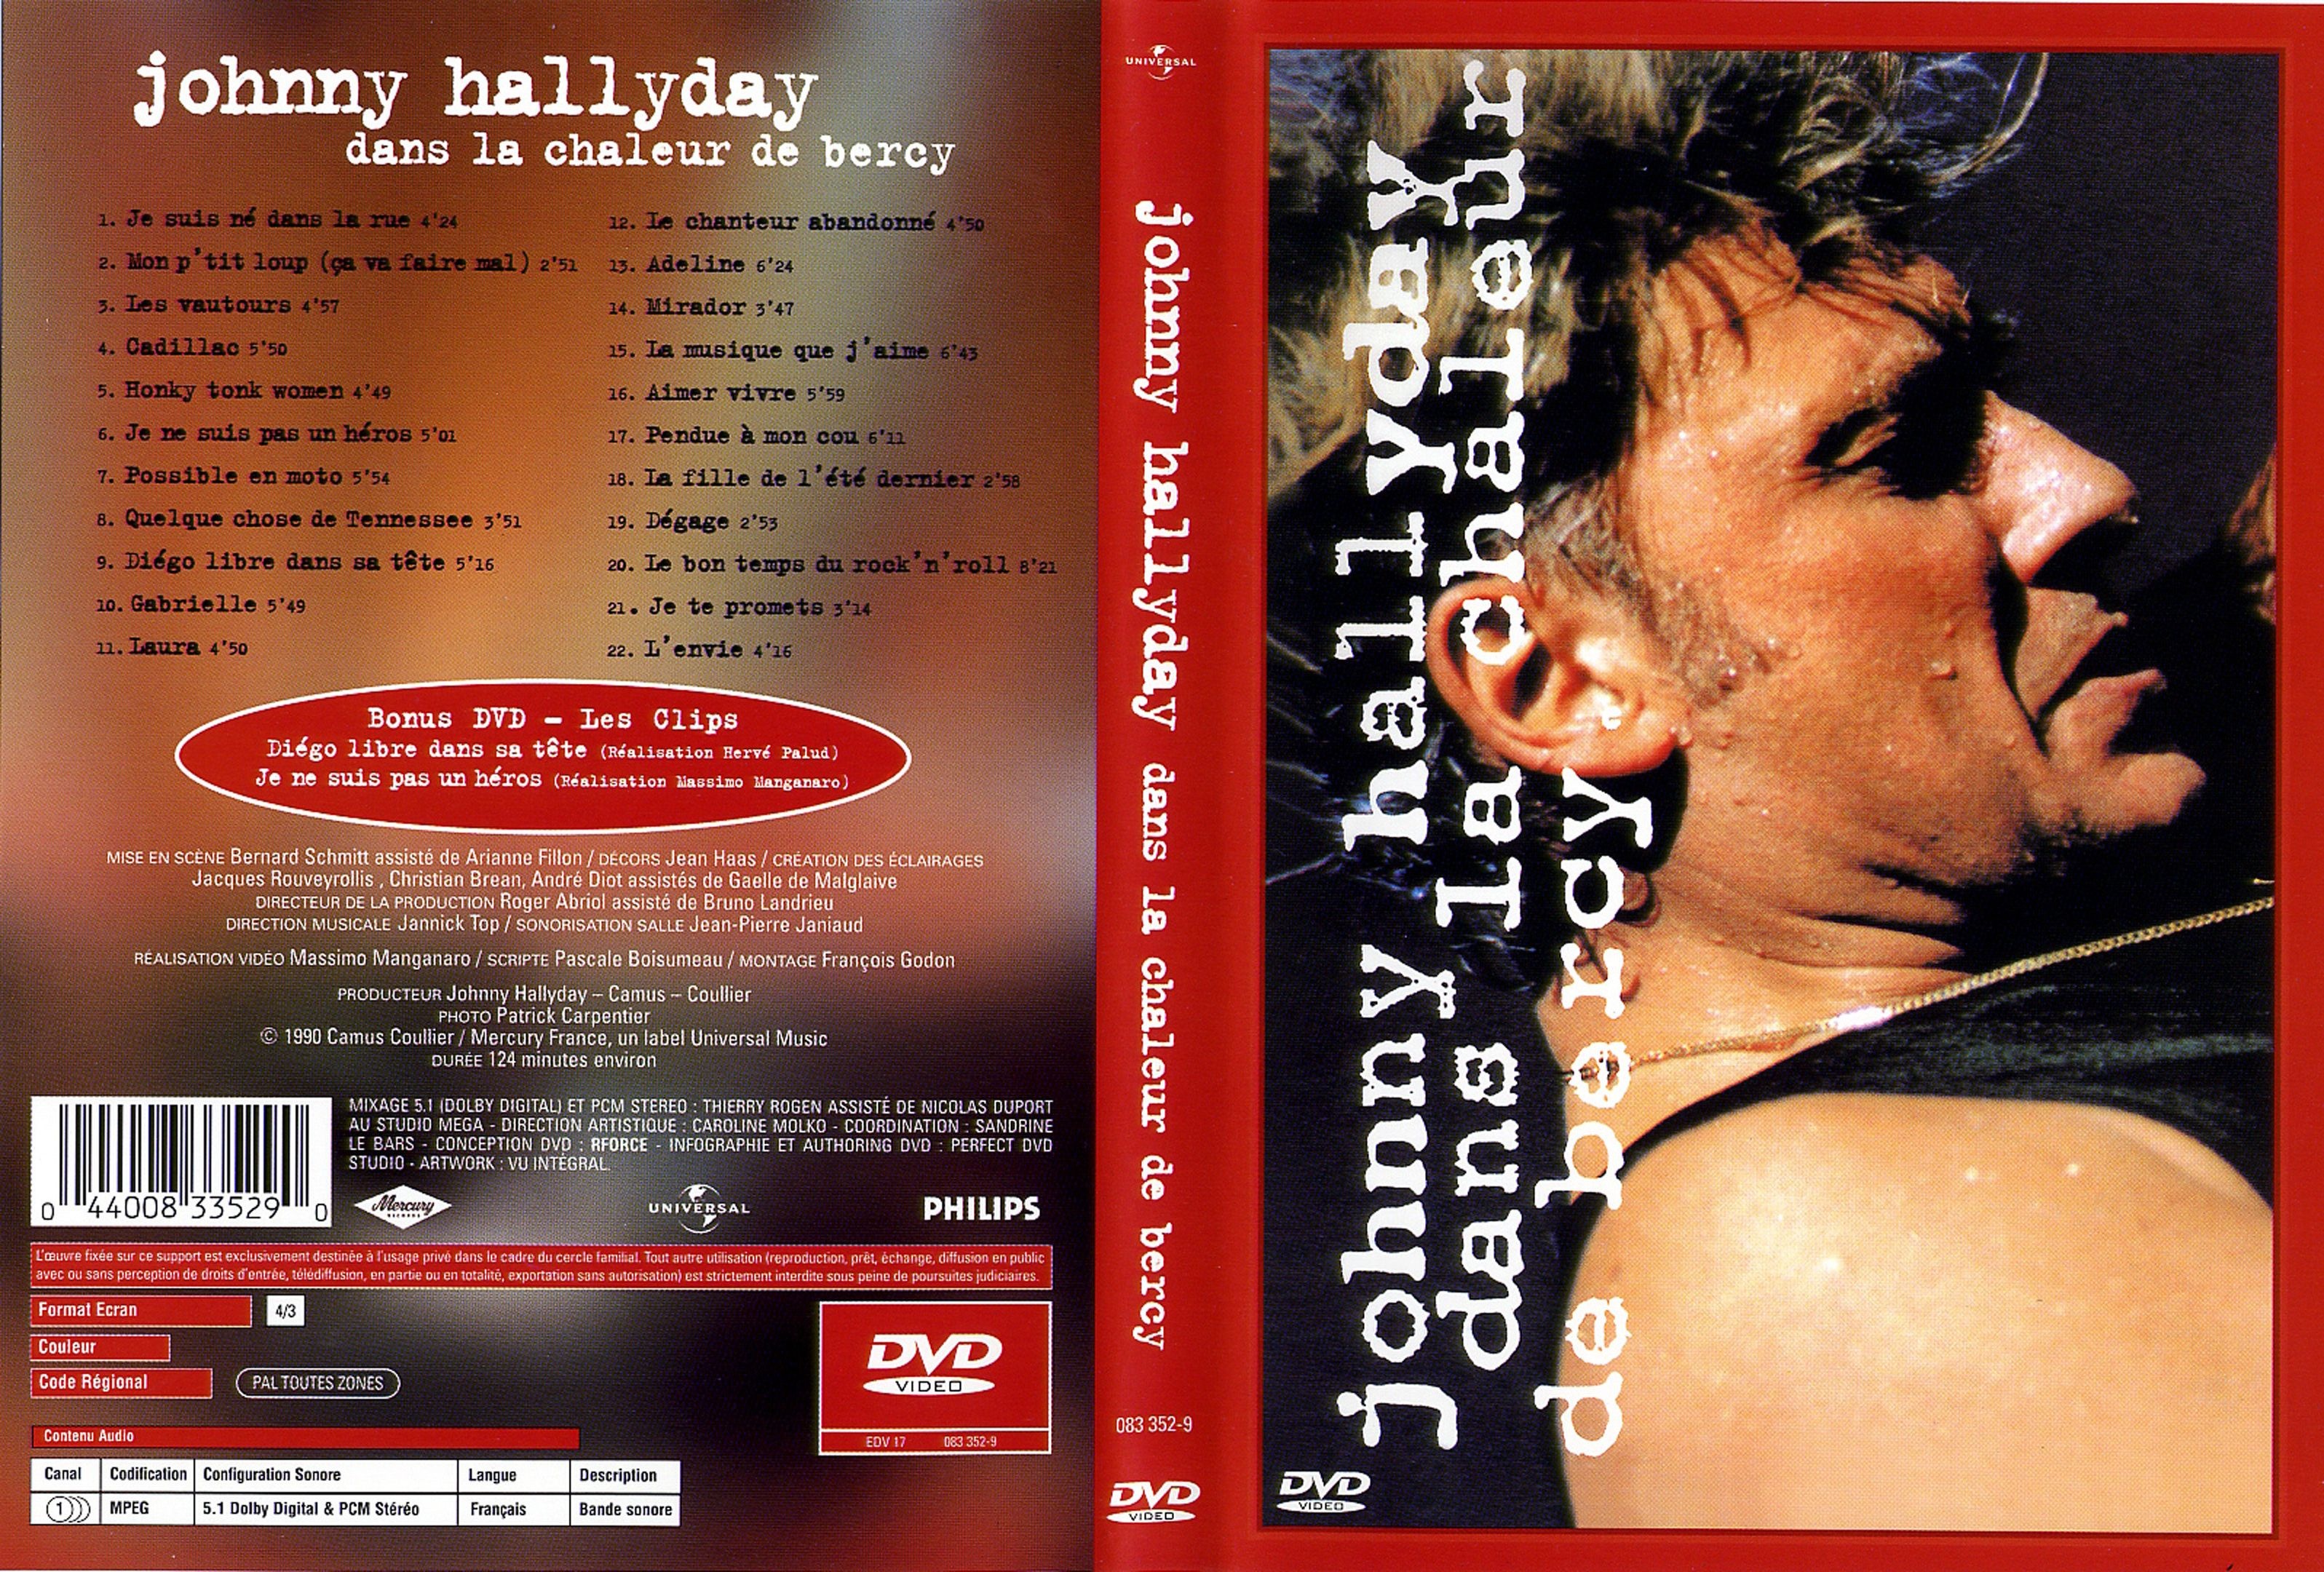 Jaquette DVD Johnny Hallyday dans la chaleur de bercy